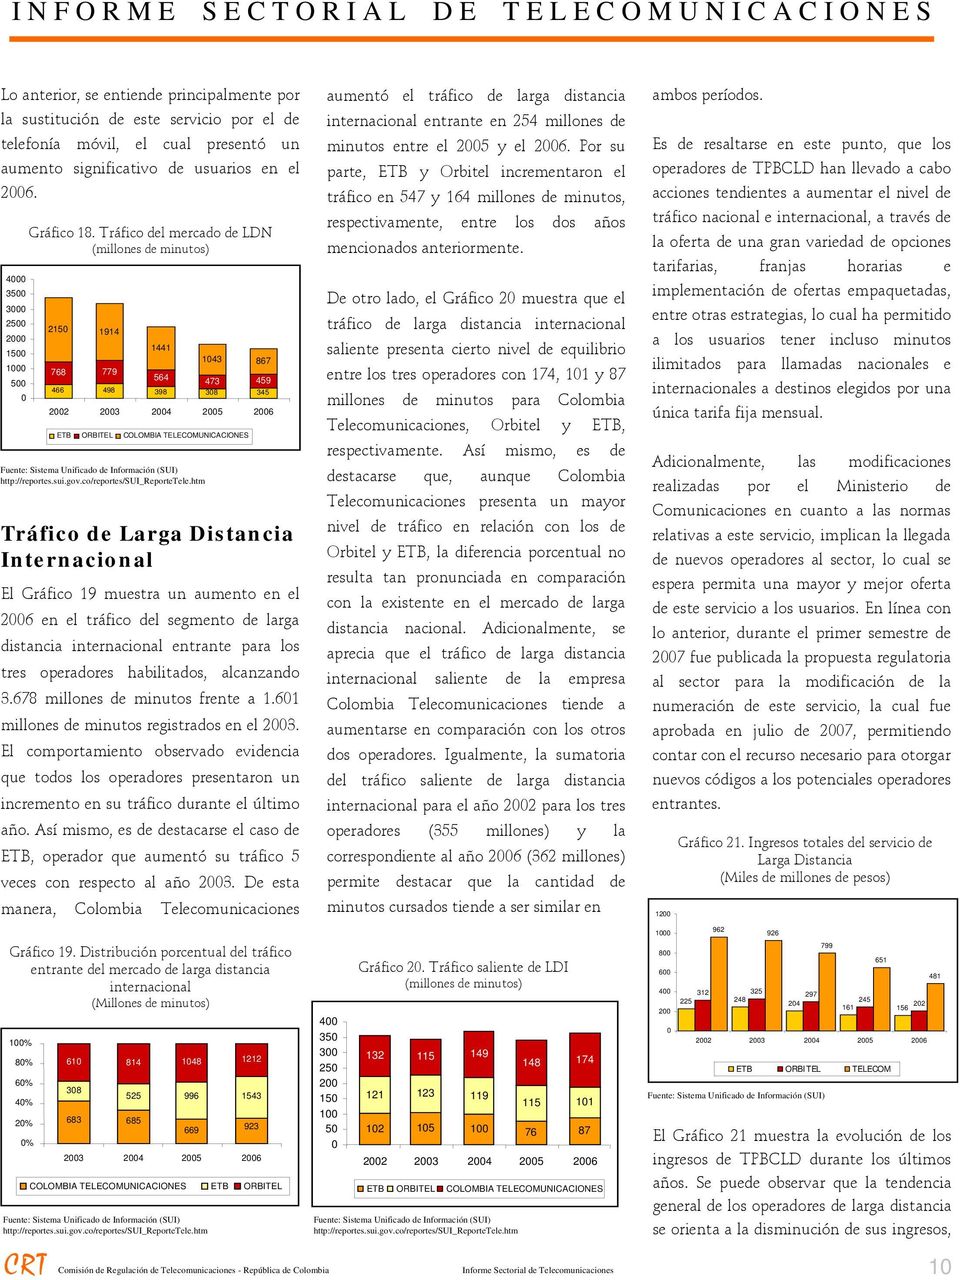 Información (SUI) http://reportes.sui.gov.co/reportes/sui_reportetele.